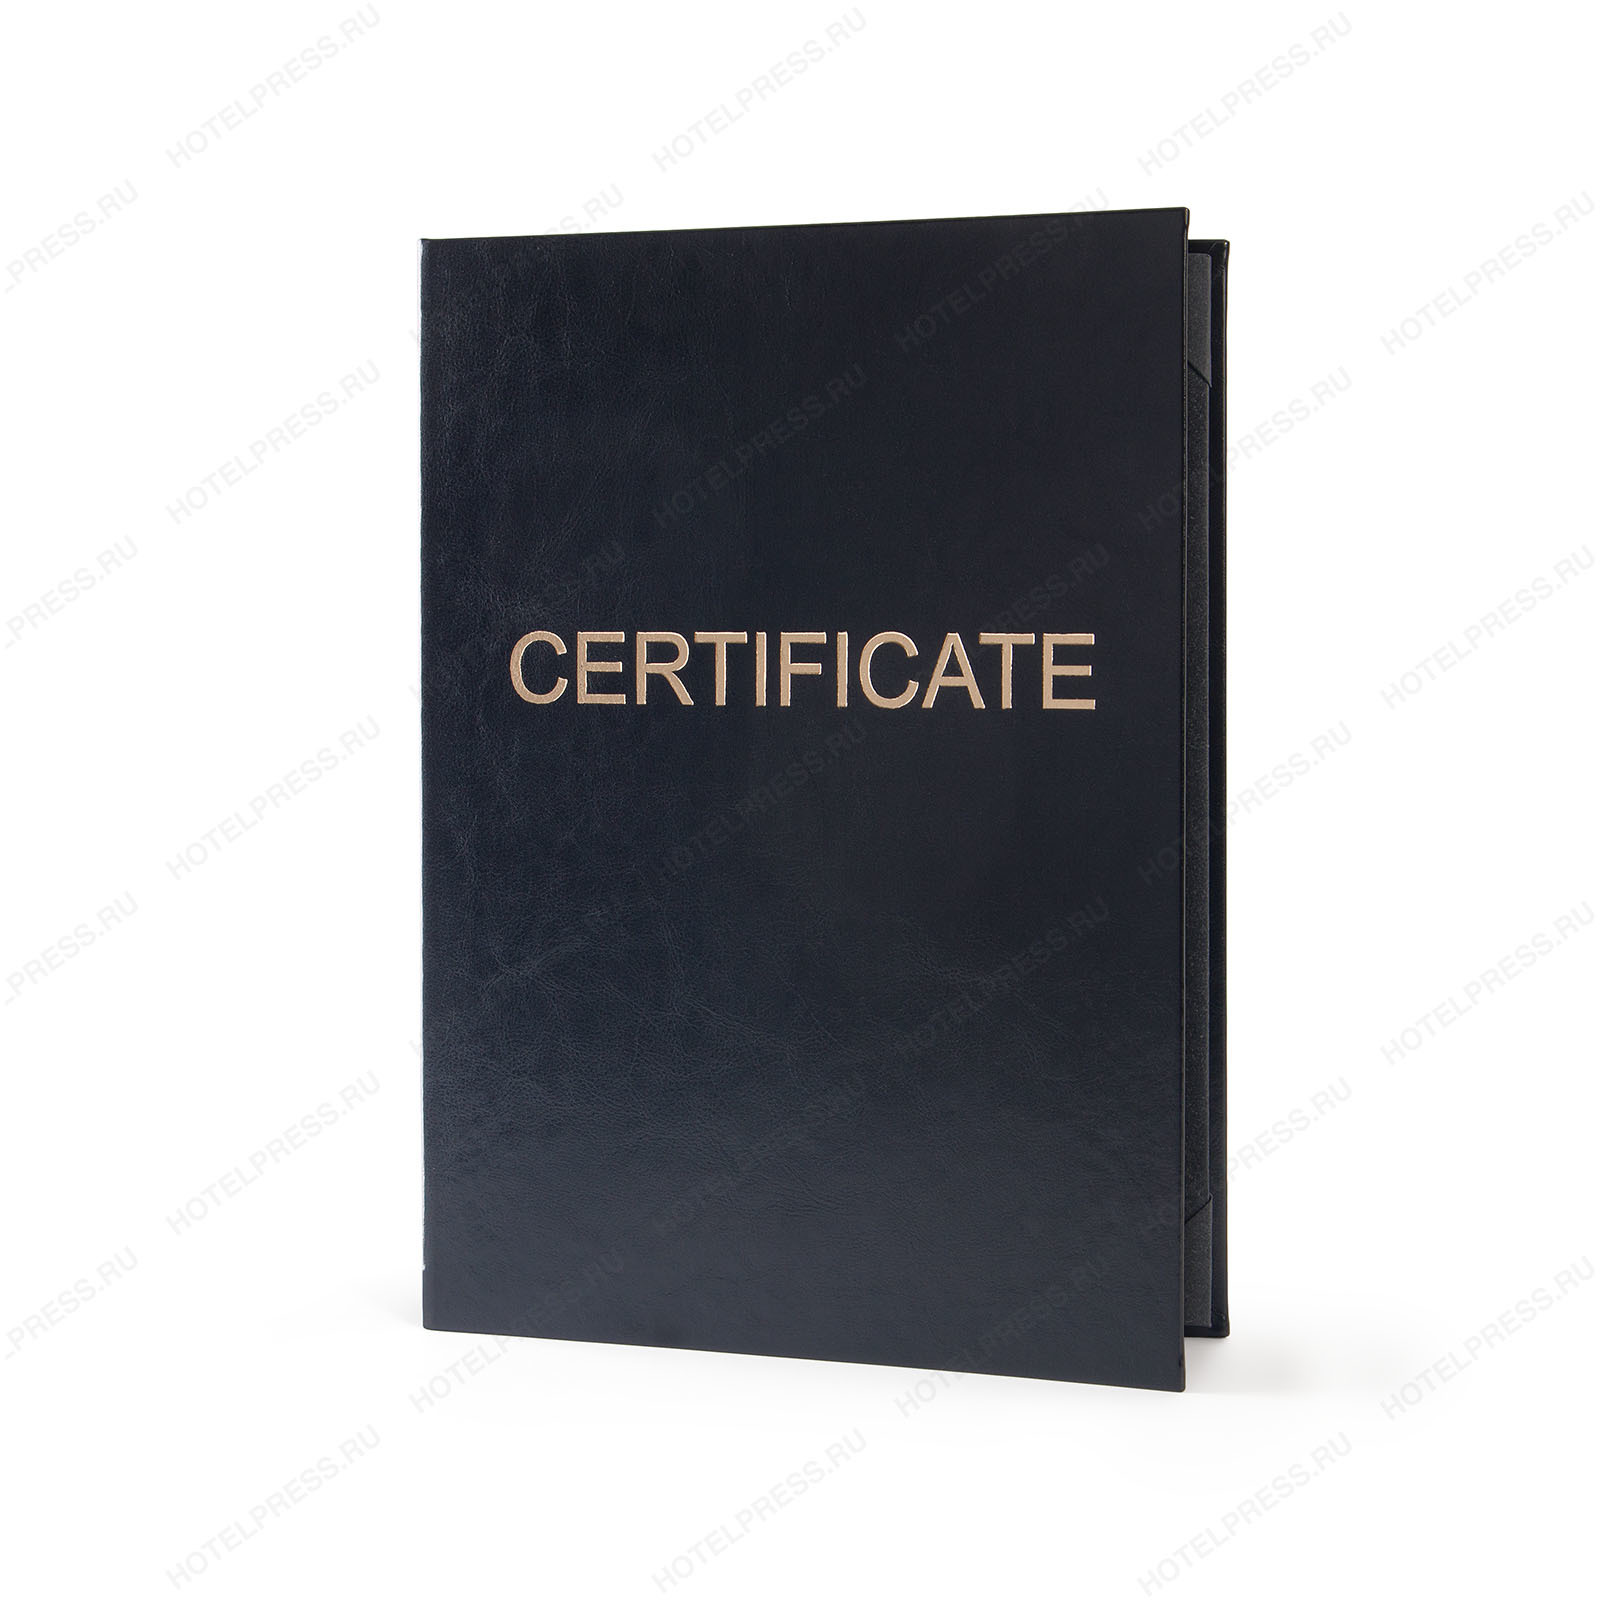 Обложка для сертификата формата А4 из эко кожи с золотым тиснением